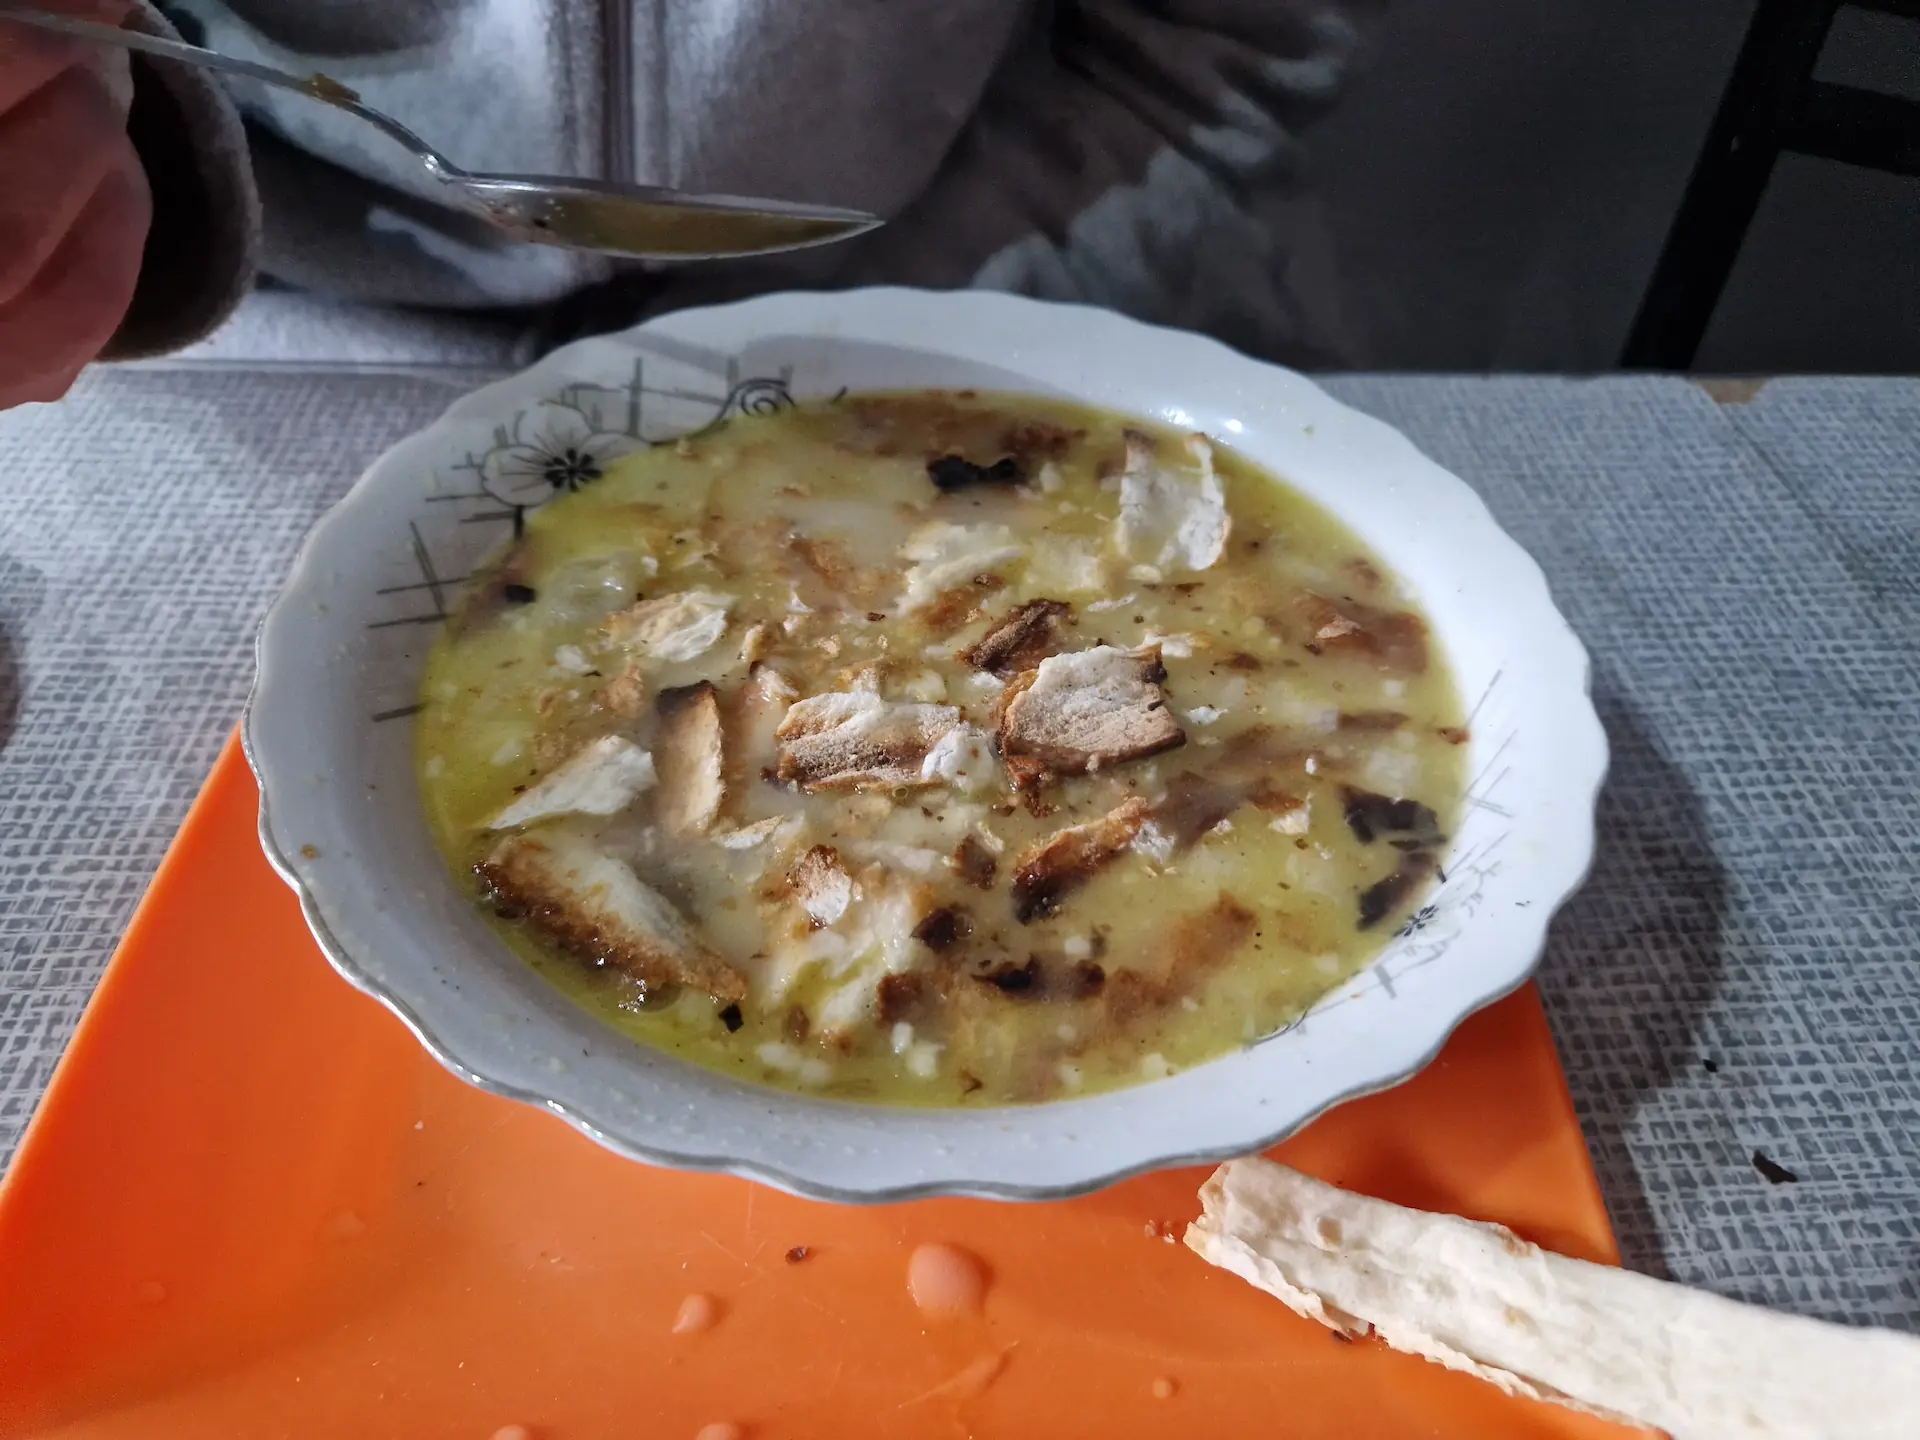 Le khach, une soupe blanche, laiteuse, où flotte des morceaux de tripes et de lavach grillé.